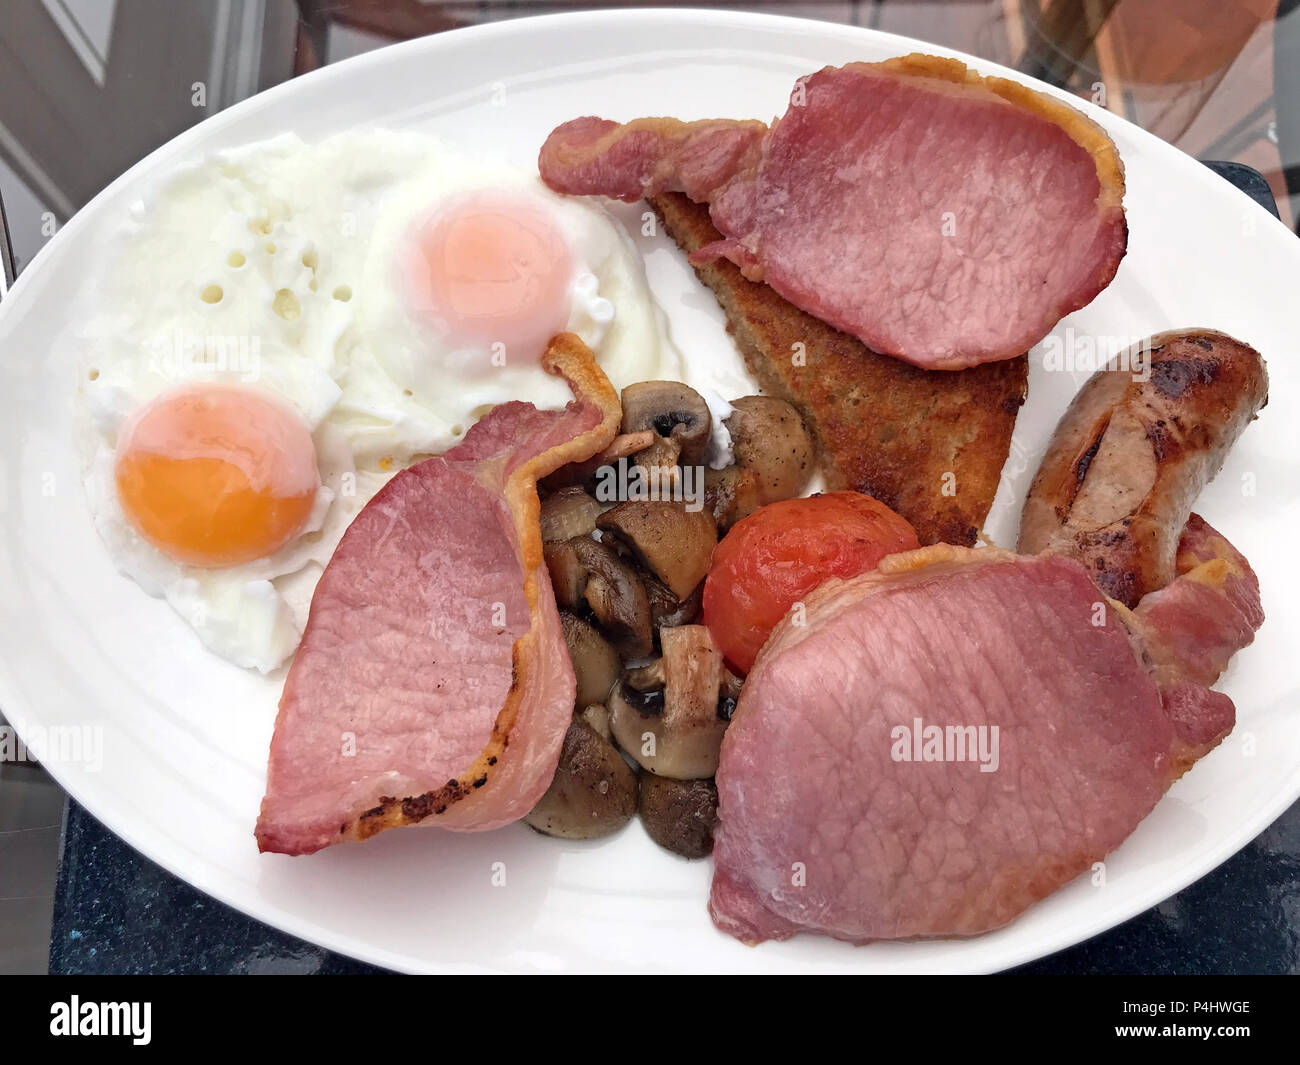 Englisches warmes Frühstück, gebratene Eier, Würstchen, gebratener Speck, Pilze, Tomaten, gebratenes Brot, auf einem Teller Stockfoto